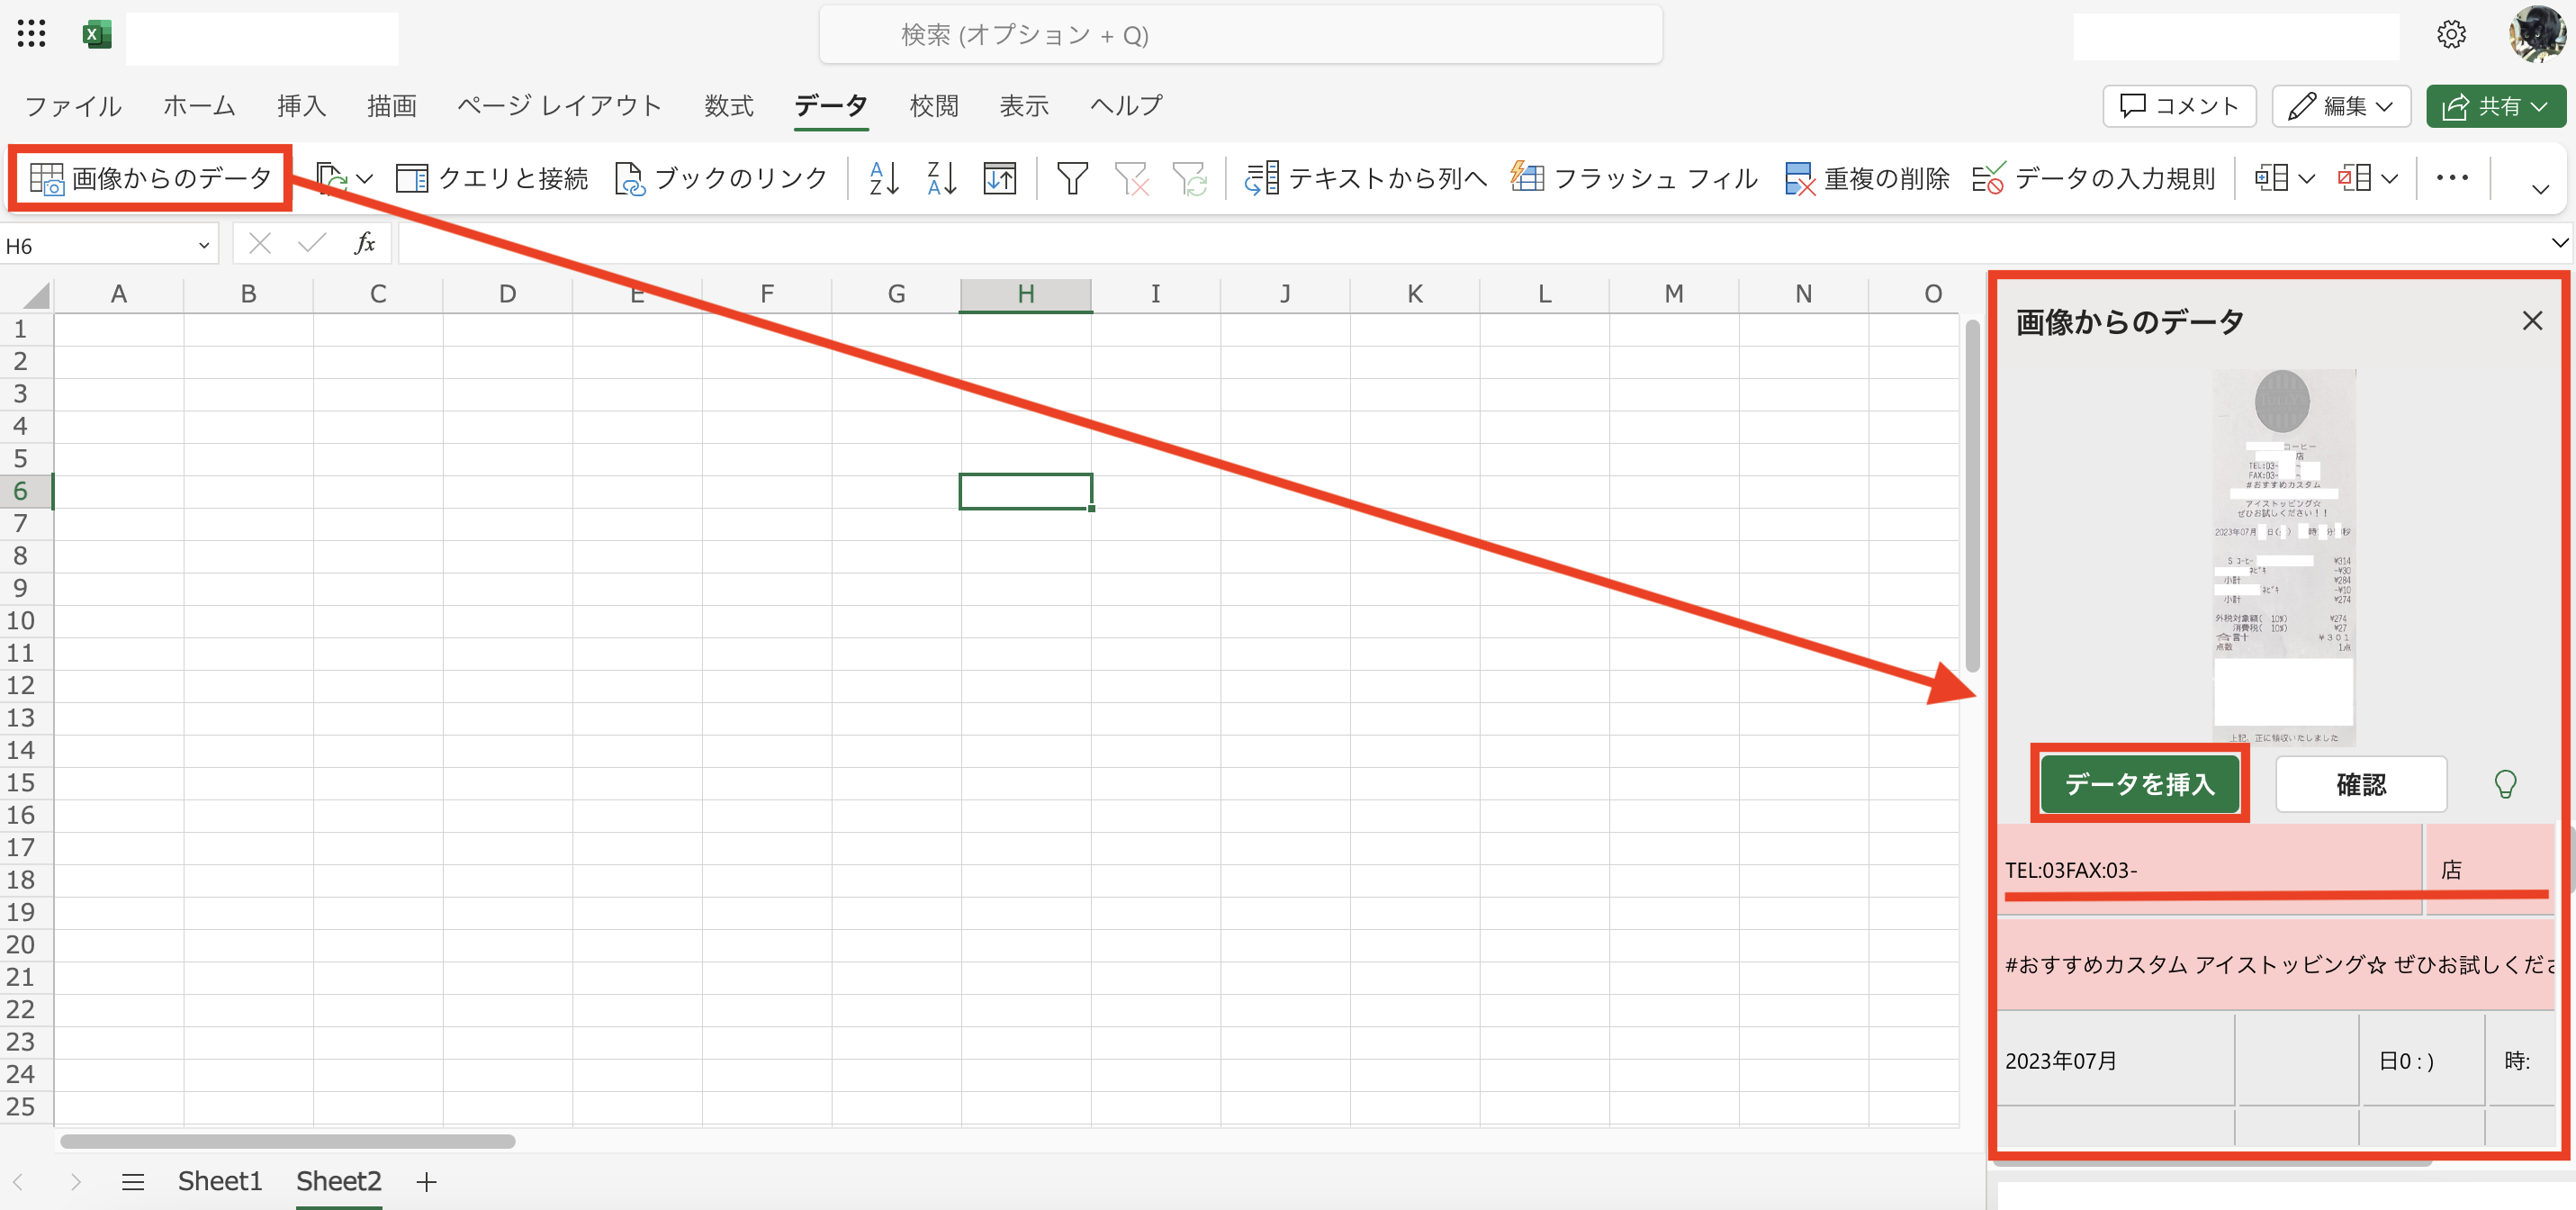 スキャナ保存をカンタンにすませるには、スマホ+Excelの組み合わせが便利です